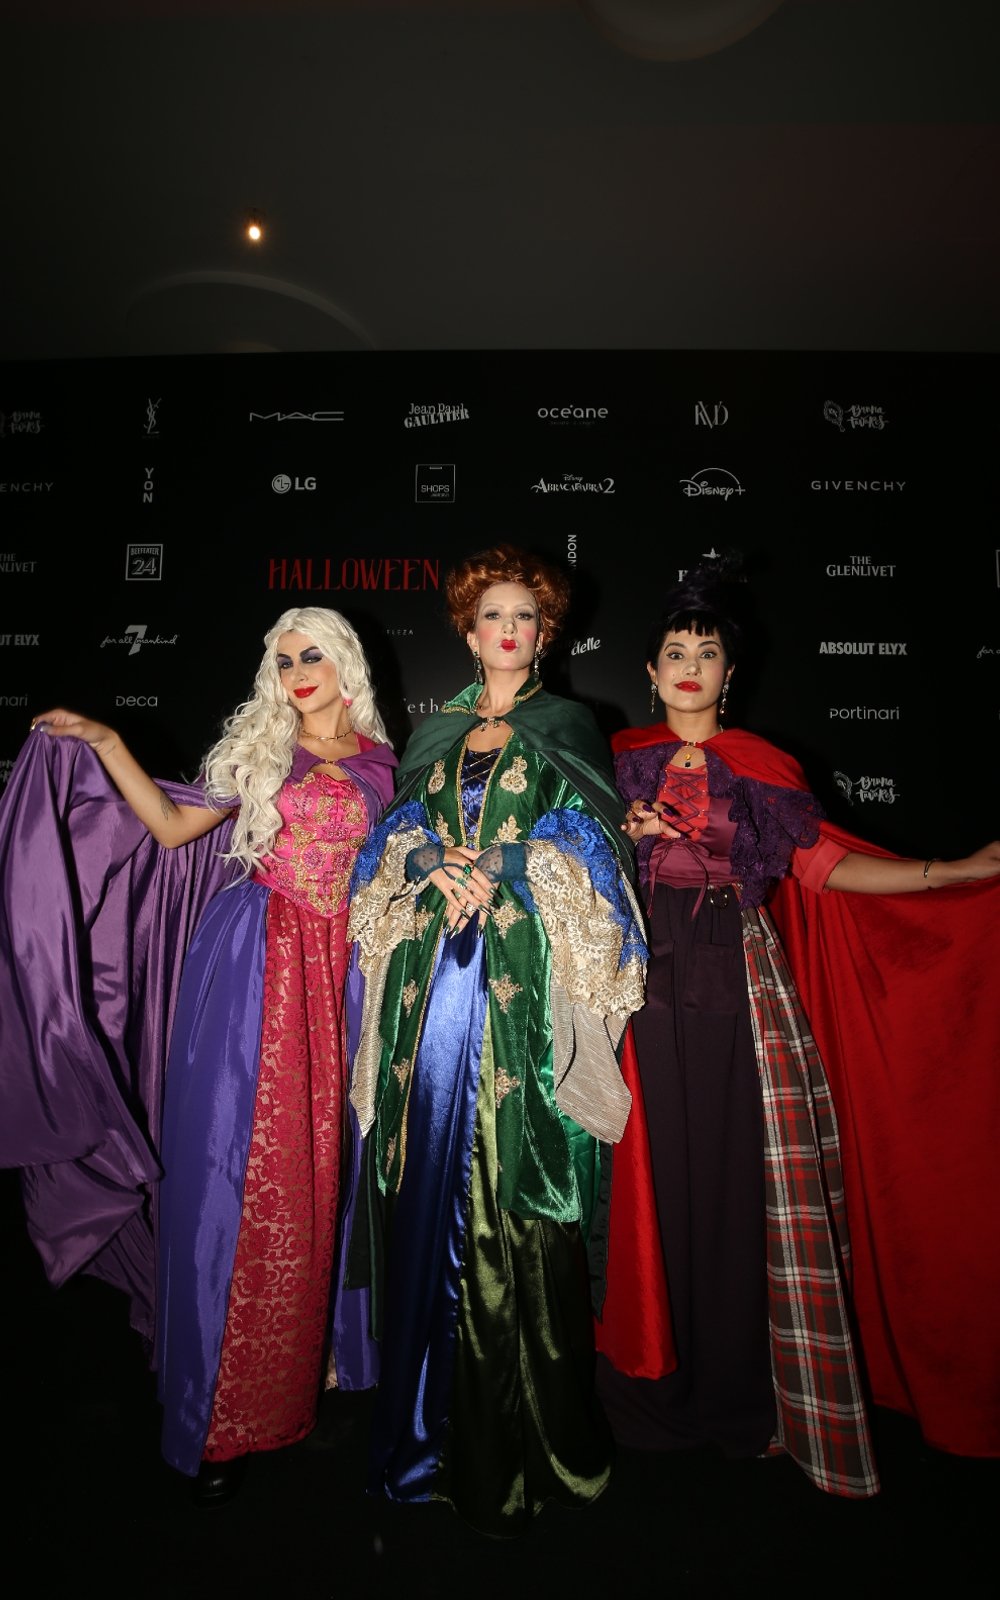 Nah Cardoso, Lore Improta e Thaynara OG - evento - Halloween Sephora - beleza - melhores looks - https://stealthelook.com.br